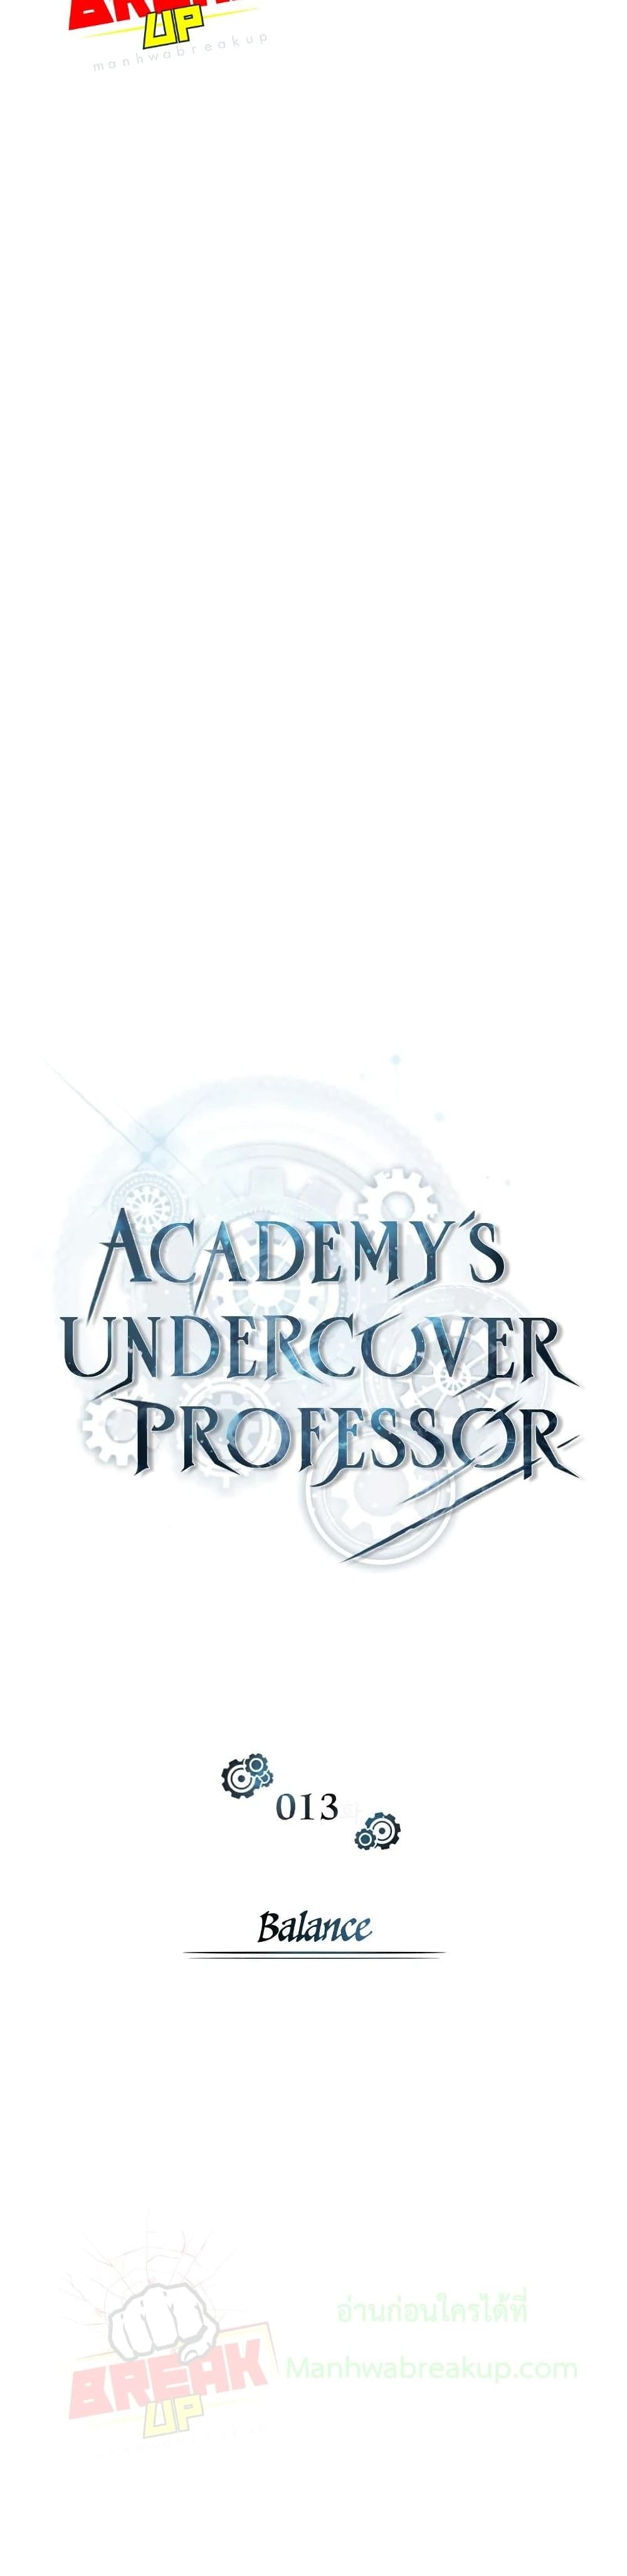 Academy’s Undercover Professor 13-13